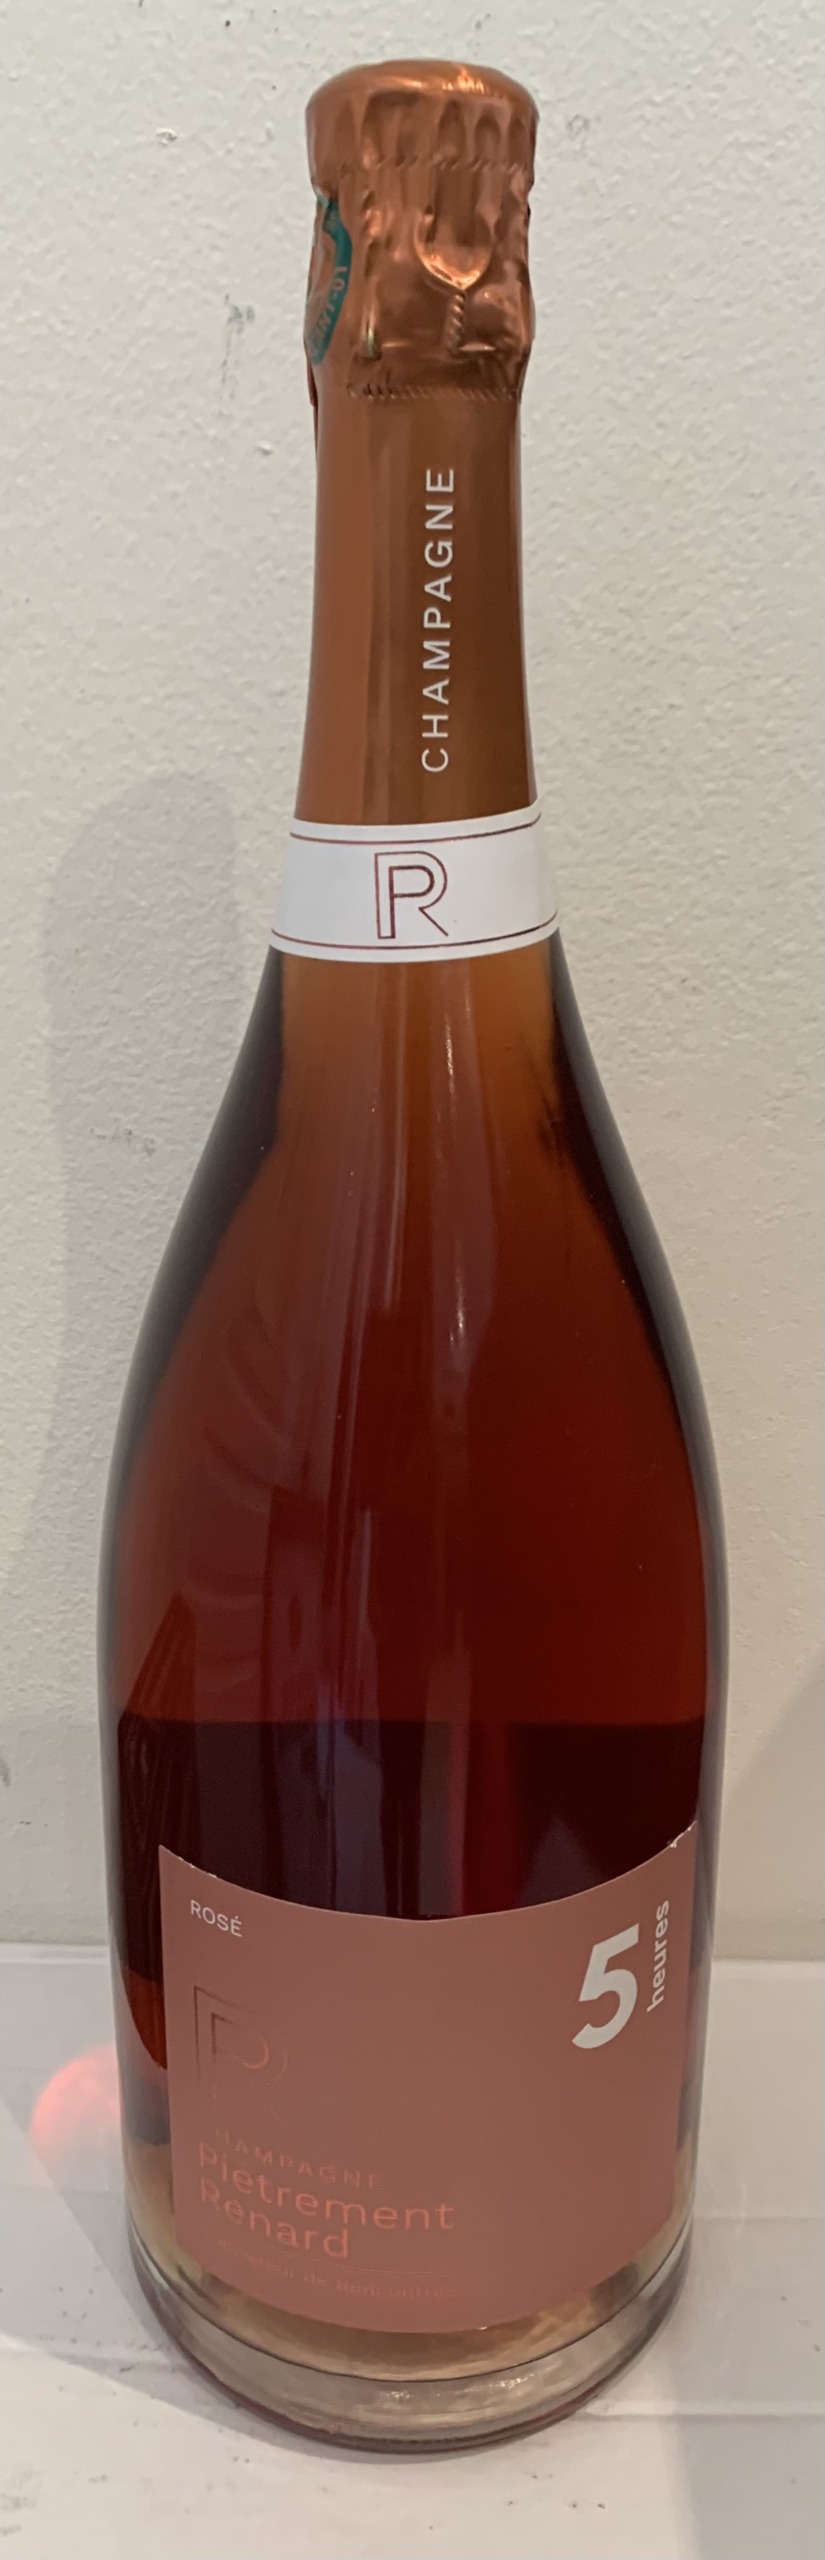 Champagne rosé brut - Piètrement Renard - cuvée 5 heures